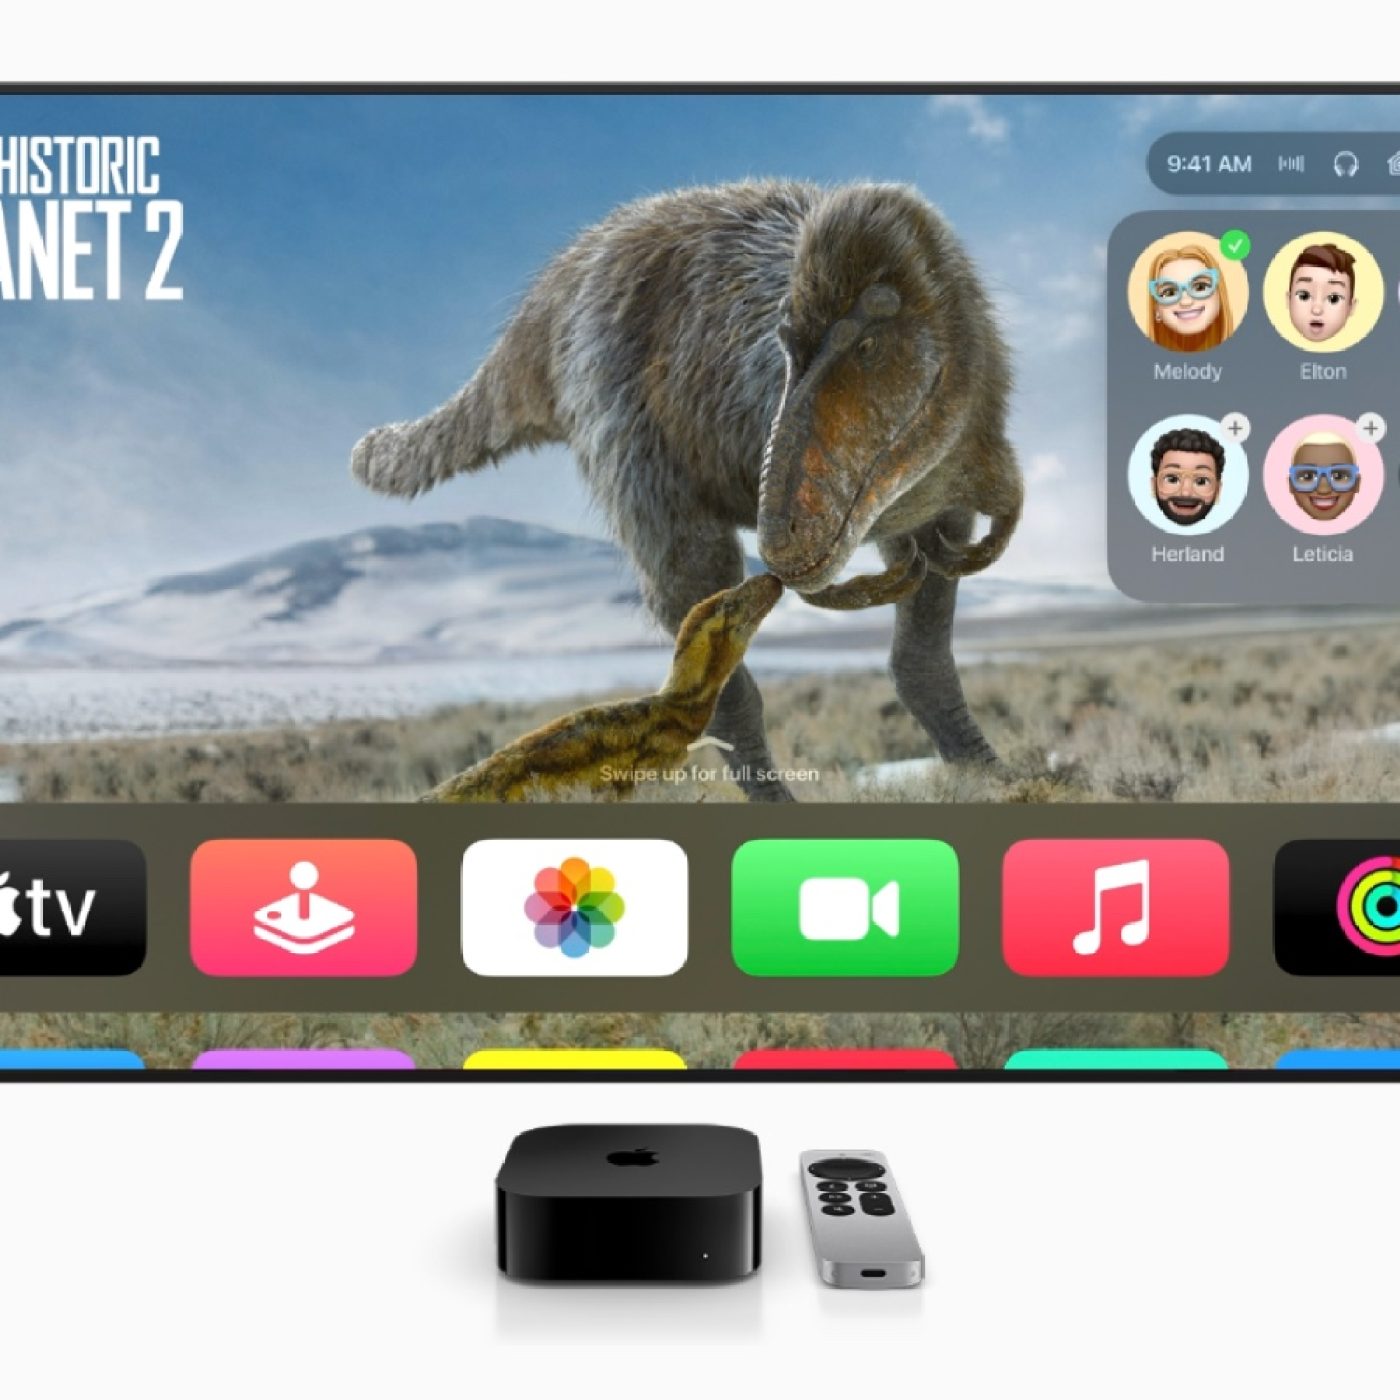 Globo Play chega à Apple TV com programação ao vivo e conteúdo em 4K